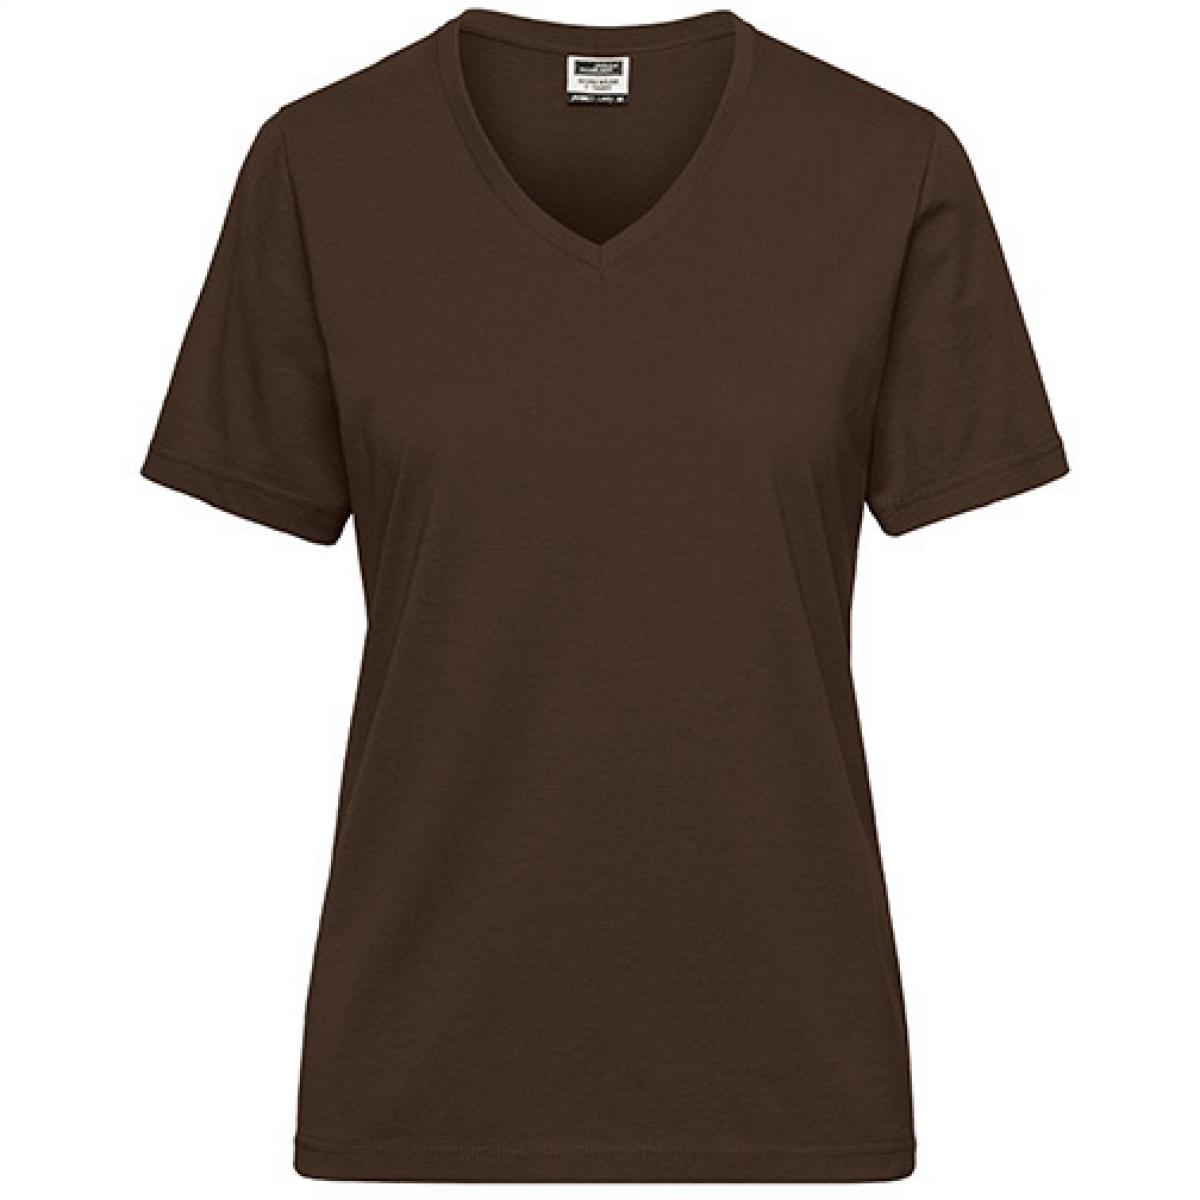 Hersteller: James+Nicholson Herstellernummer: JN1807 Artikelbezeichnung: Ladies‘ BIO Workwear T-Shirt / Damen T-Shirt - Waschbar 60C Farbe: Brown